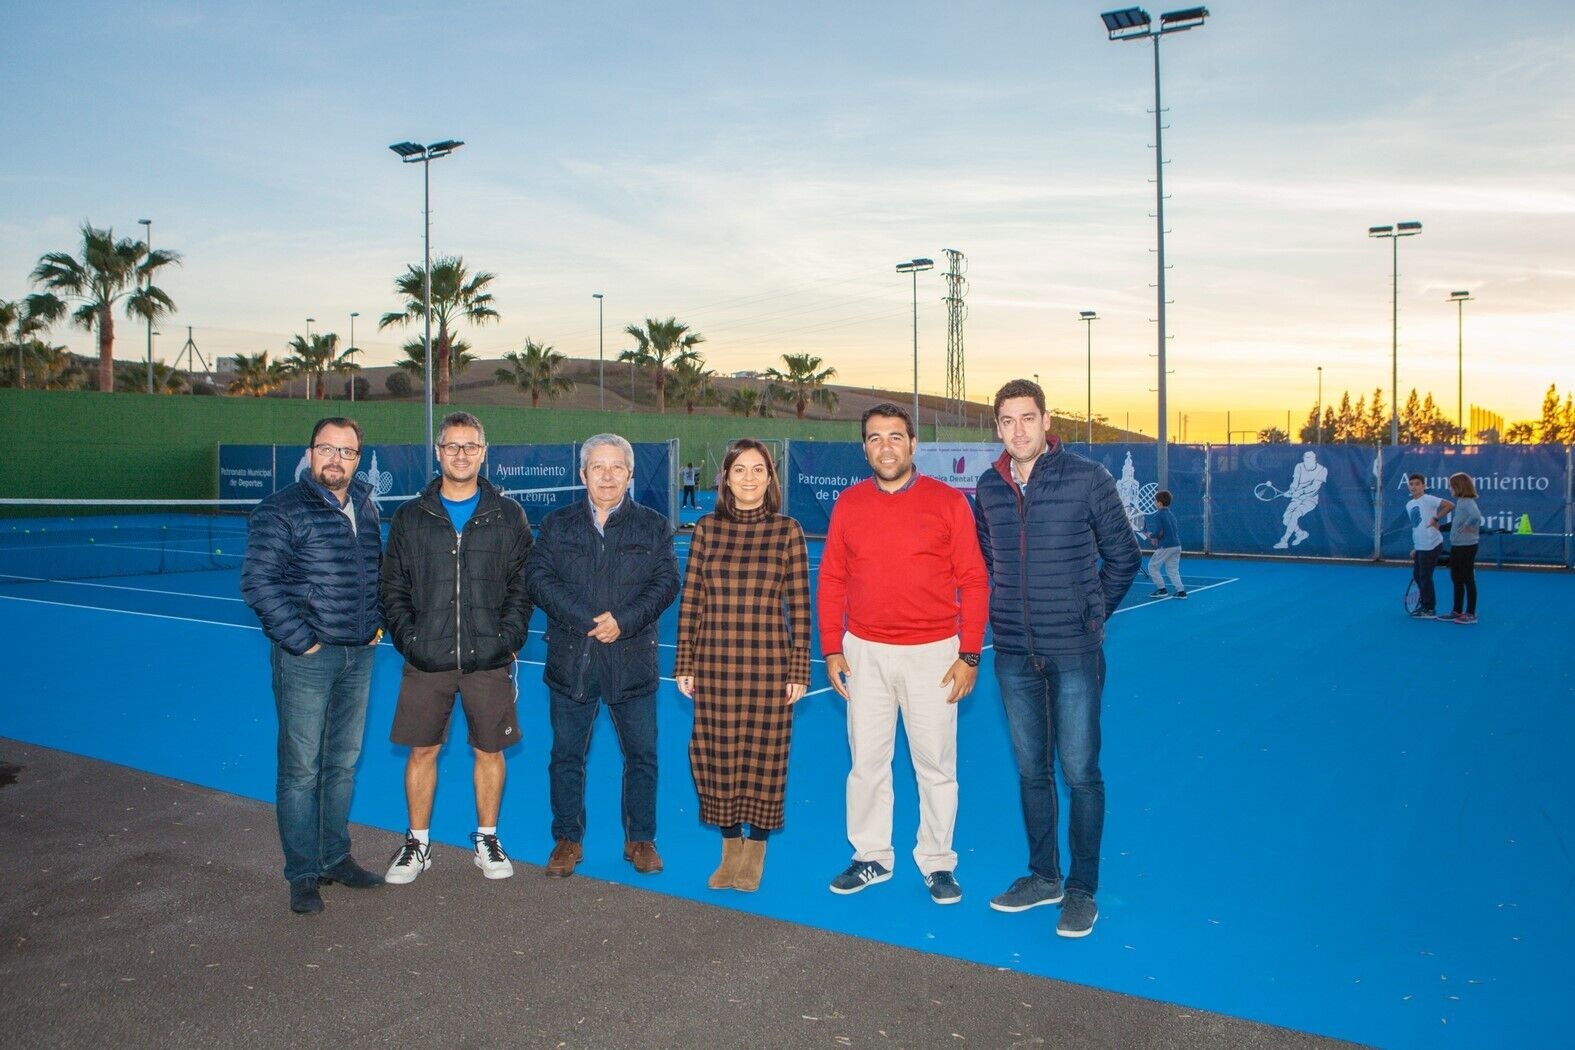 El Presidente de la Federación Andaluza de Tenis visita Lebrija (2) (Copiar)